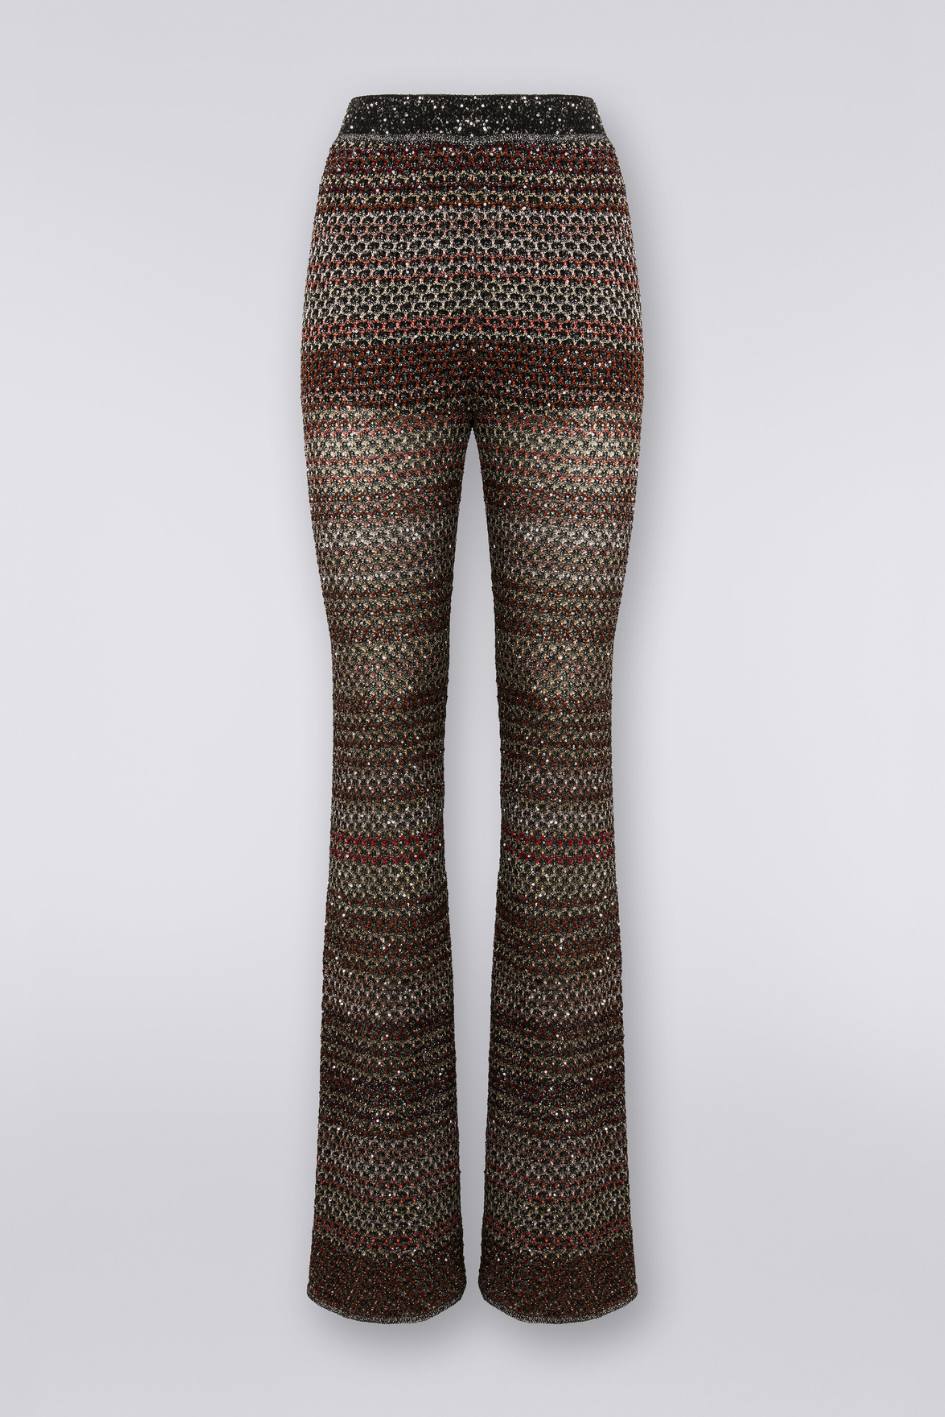 Net knit Pants with sequin Appliqué